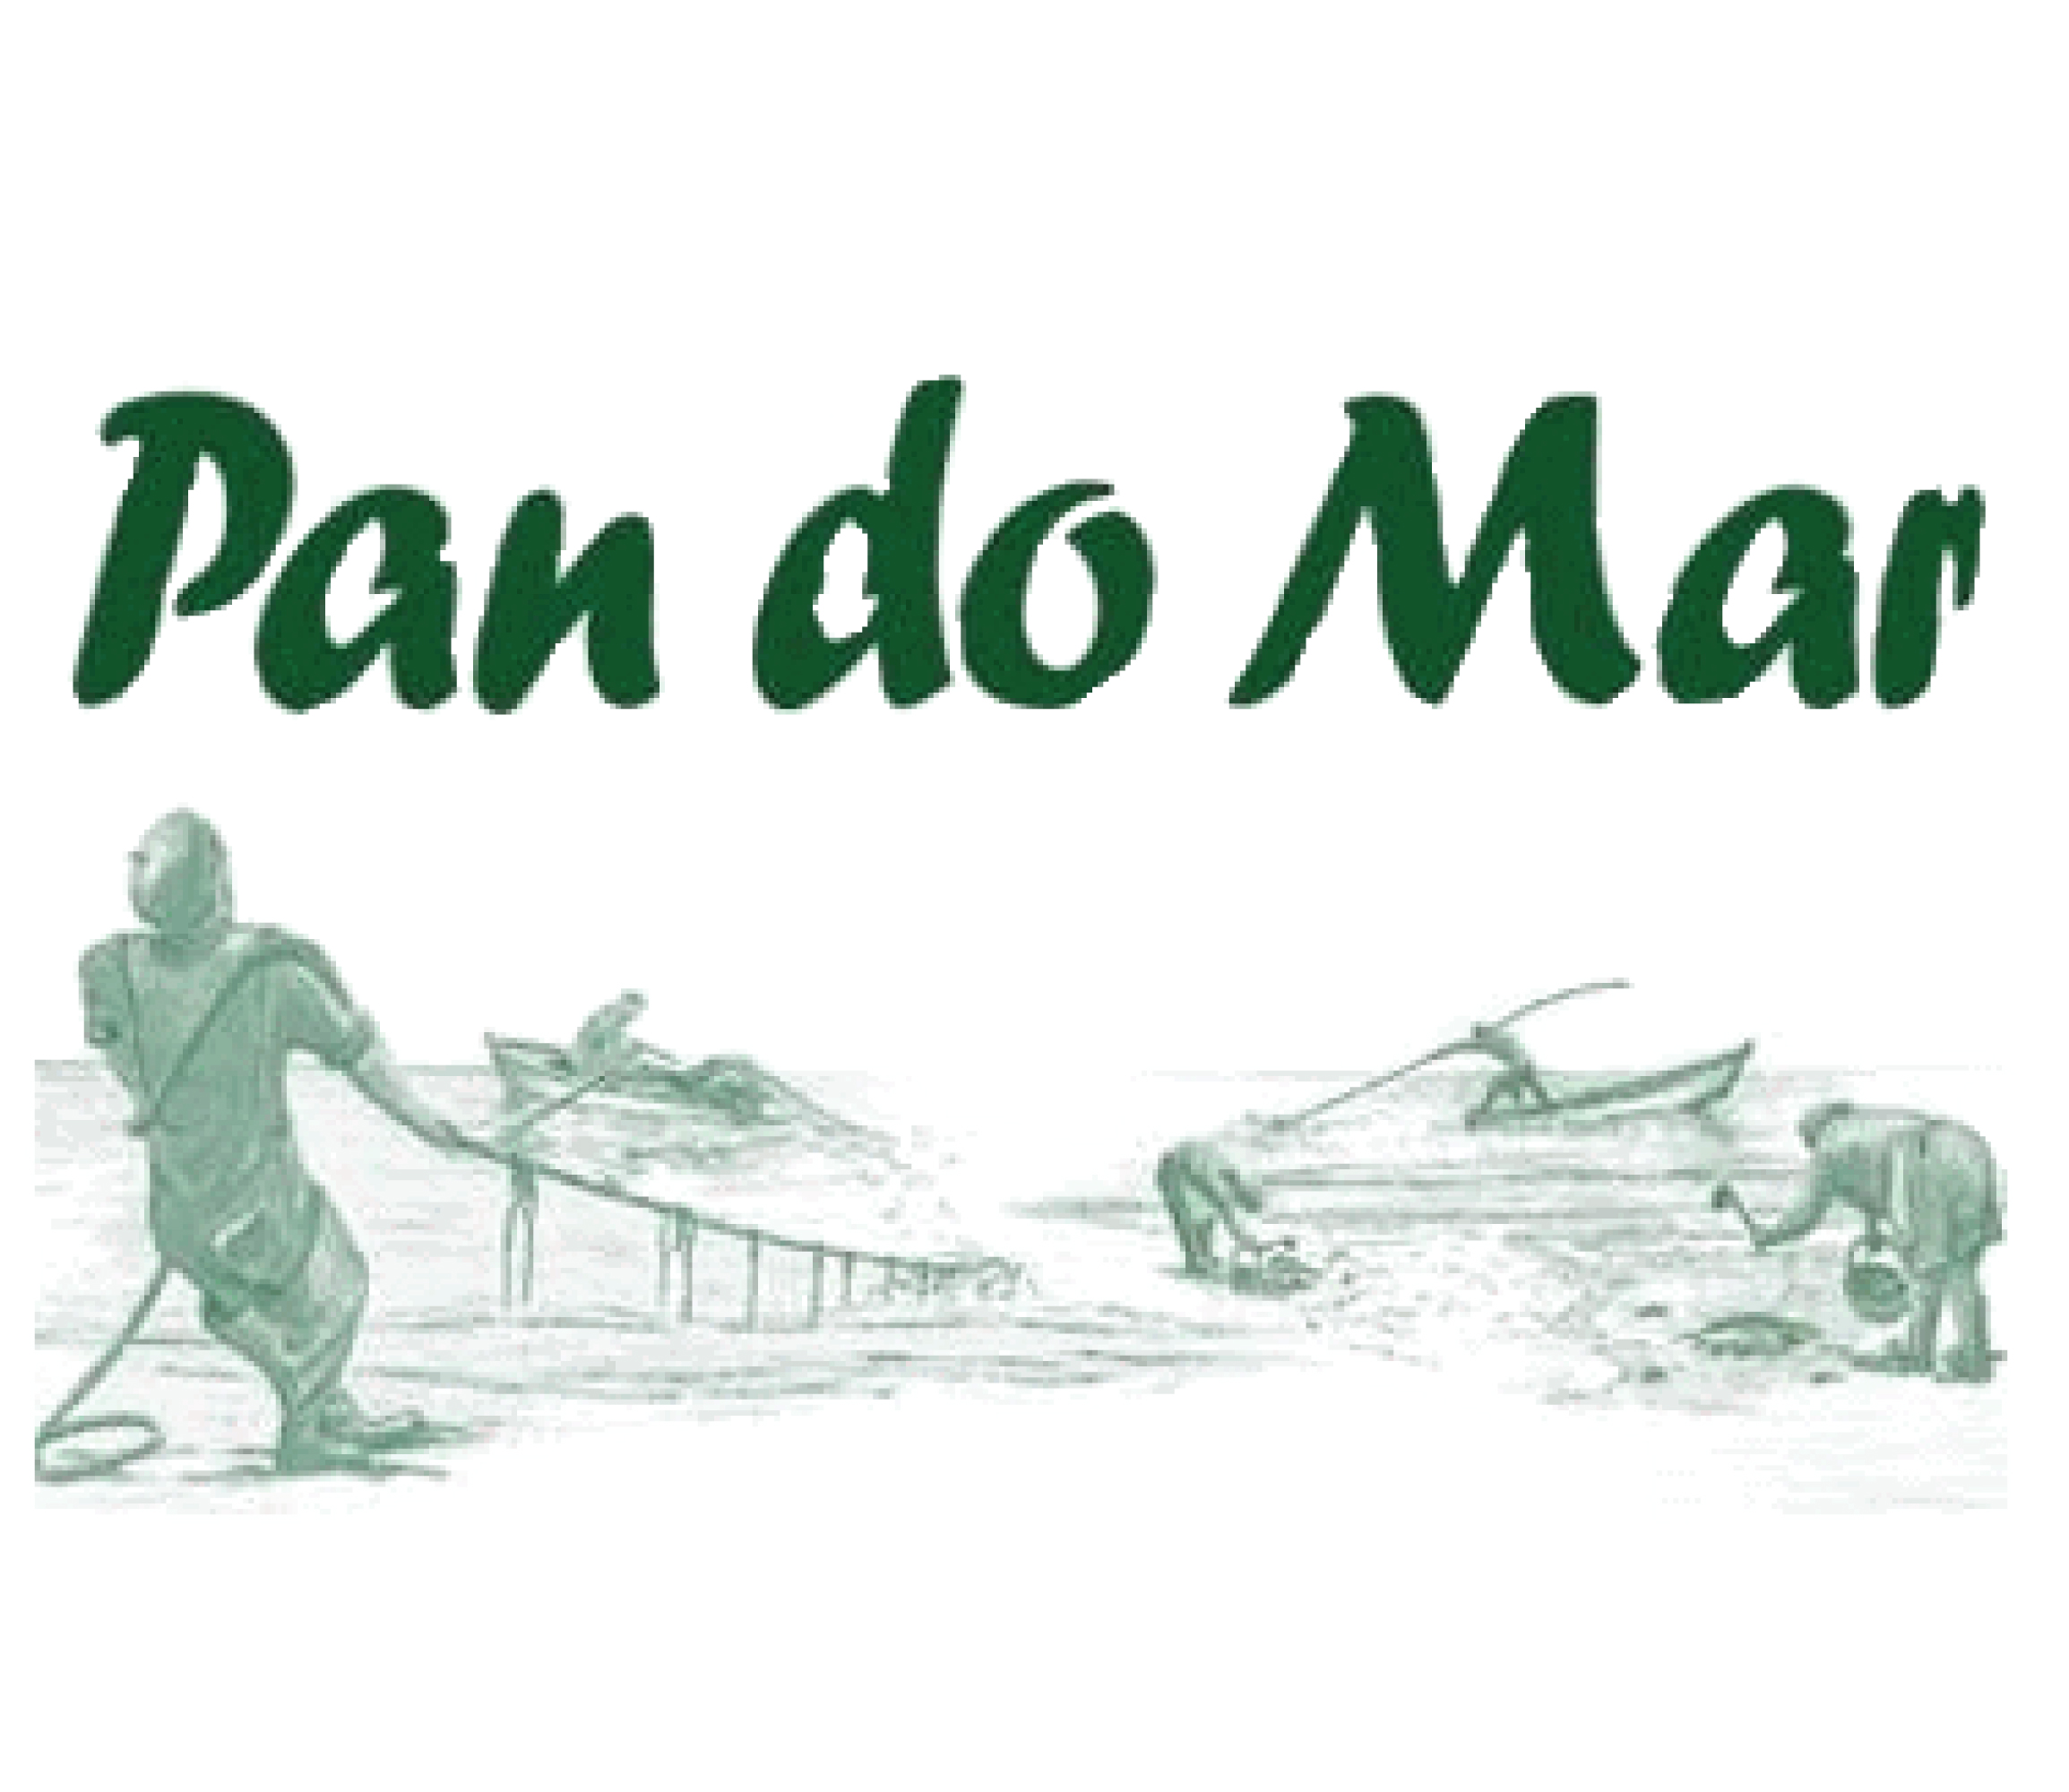 PAN DO MAR